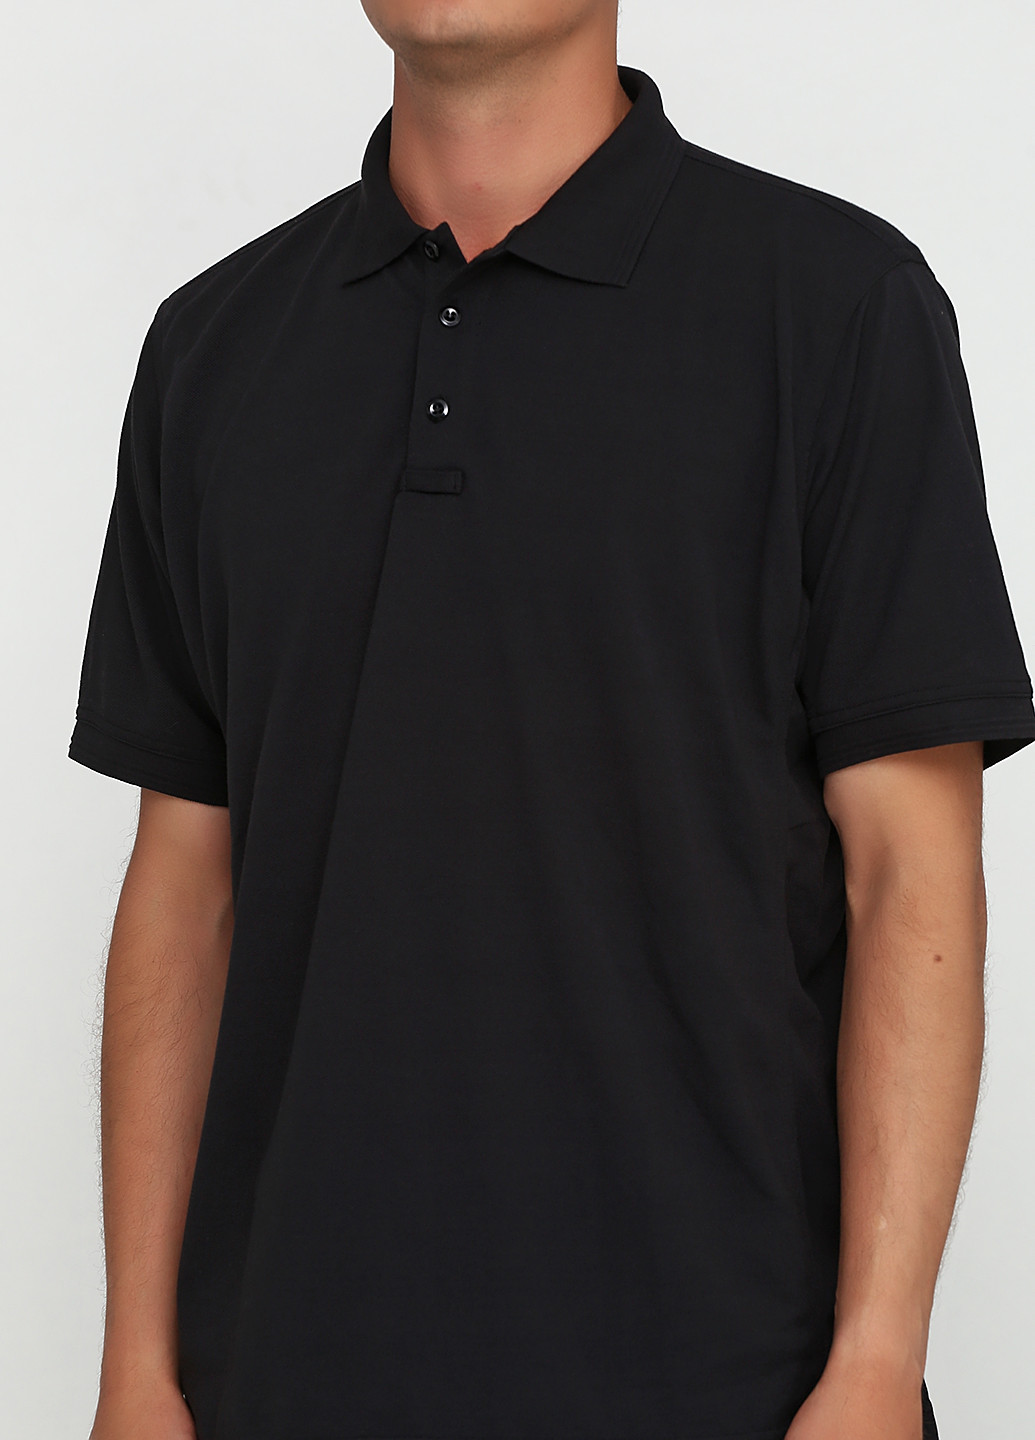 Черная футболка-поло для мужчин Perfection однотонная